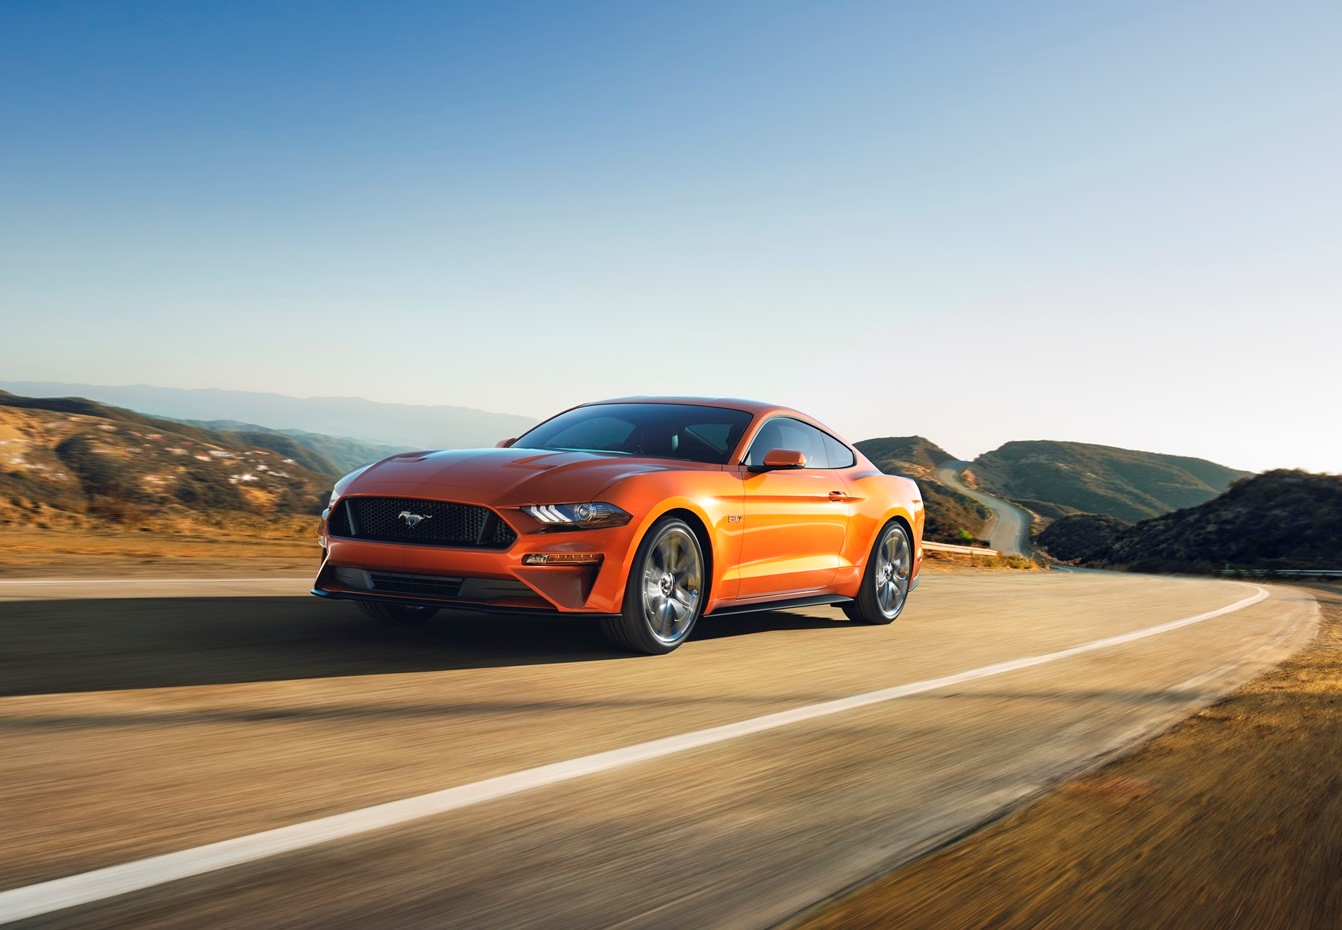 Envío Escribe un reporte historia El Ford Mustang GT acelera entre 0 y 100 km/h en menos de cuatro segundos |  Valenciacars